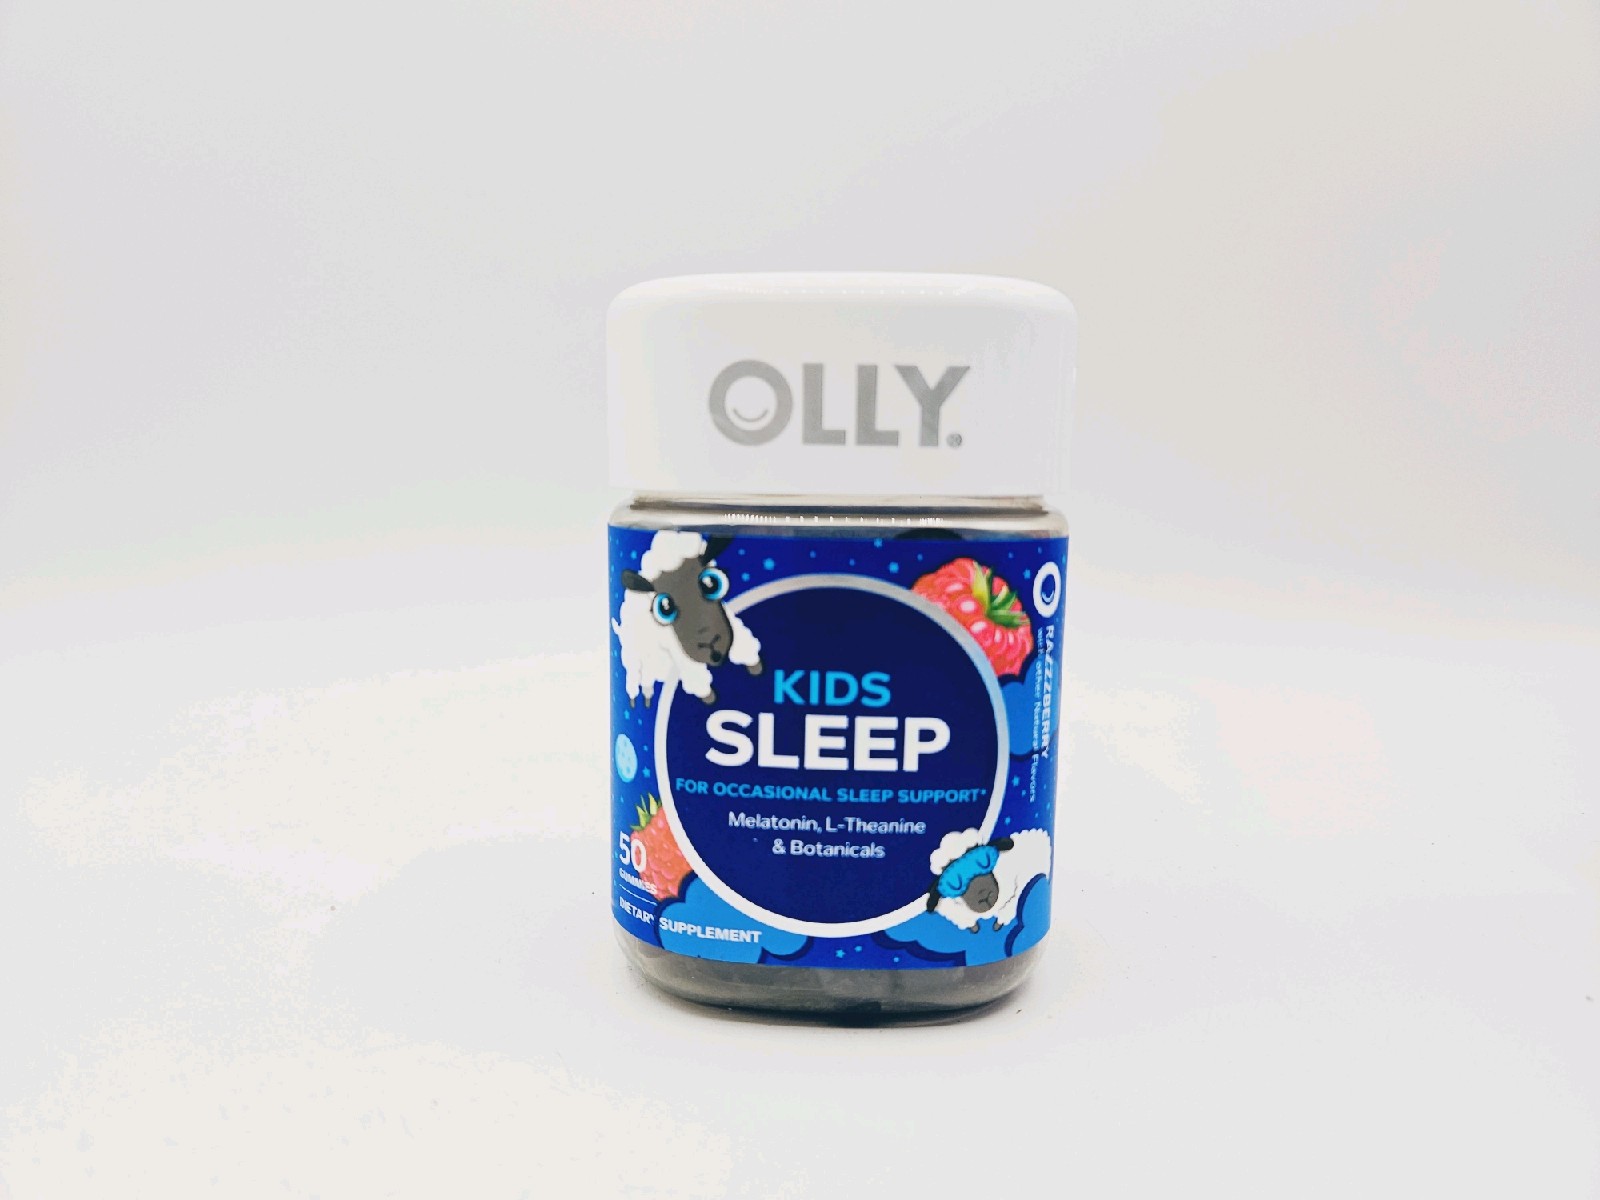 OLLY Kids Sleep Gummy Raspberry50 Count